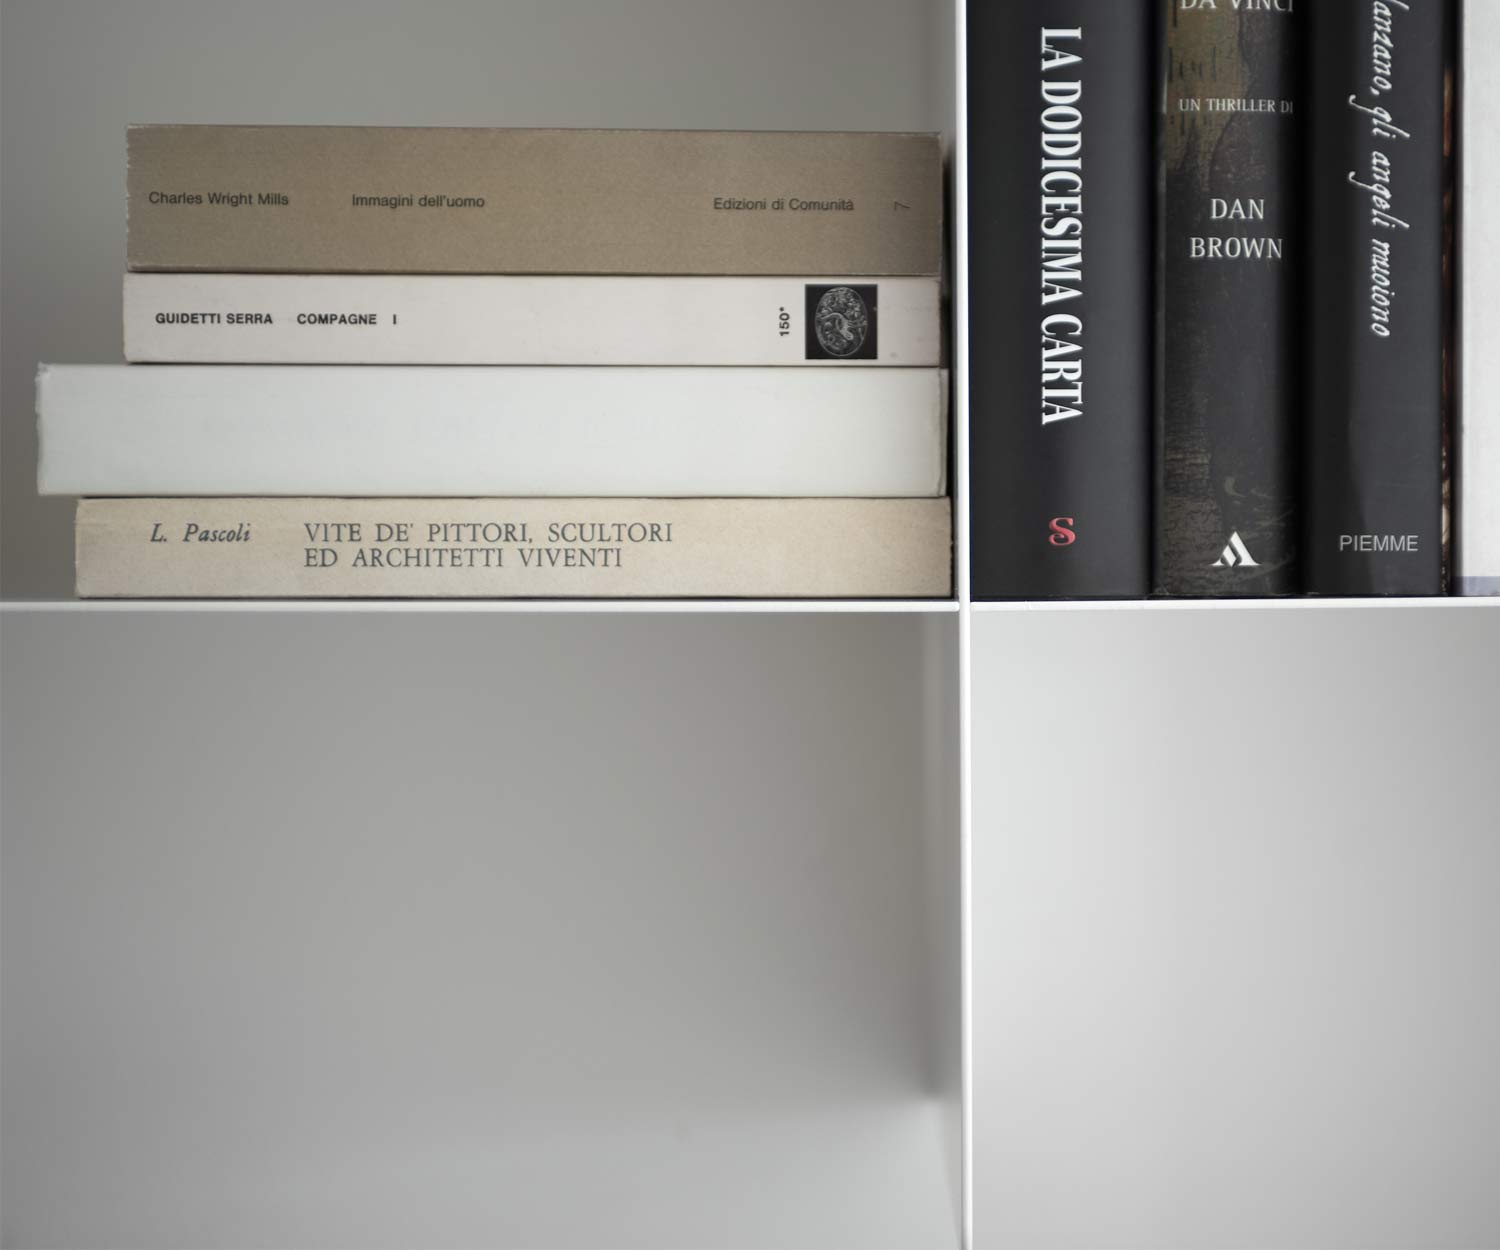 MEME Designe Innesto boekenkast voor aan de muur gemaakt van metaal dun slank